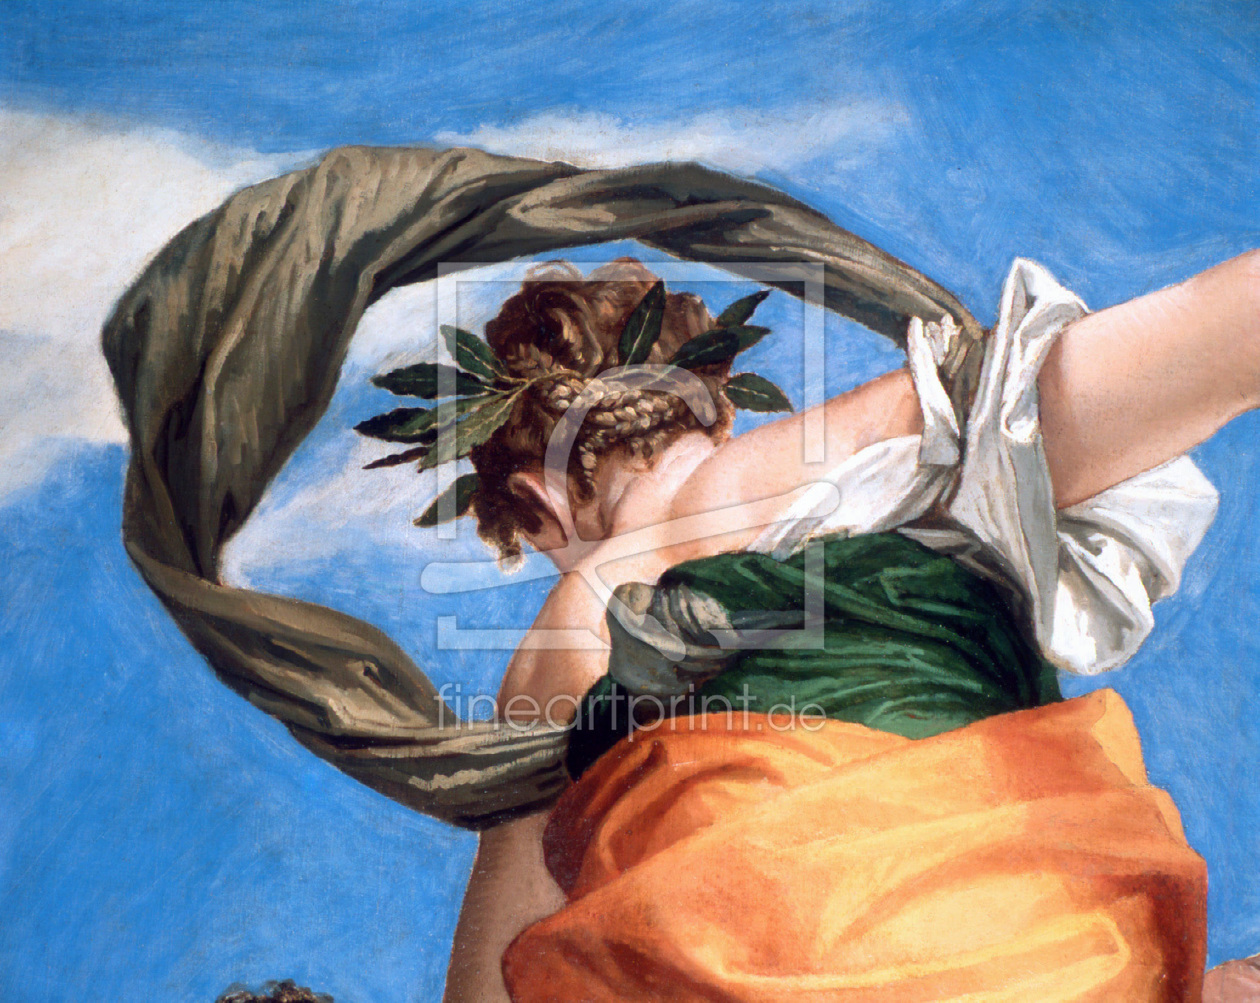 Bild-Nr.: 30009369 Veronese / Triumph of Virtue over Evil erstellt von Veronese, Paolo